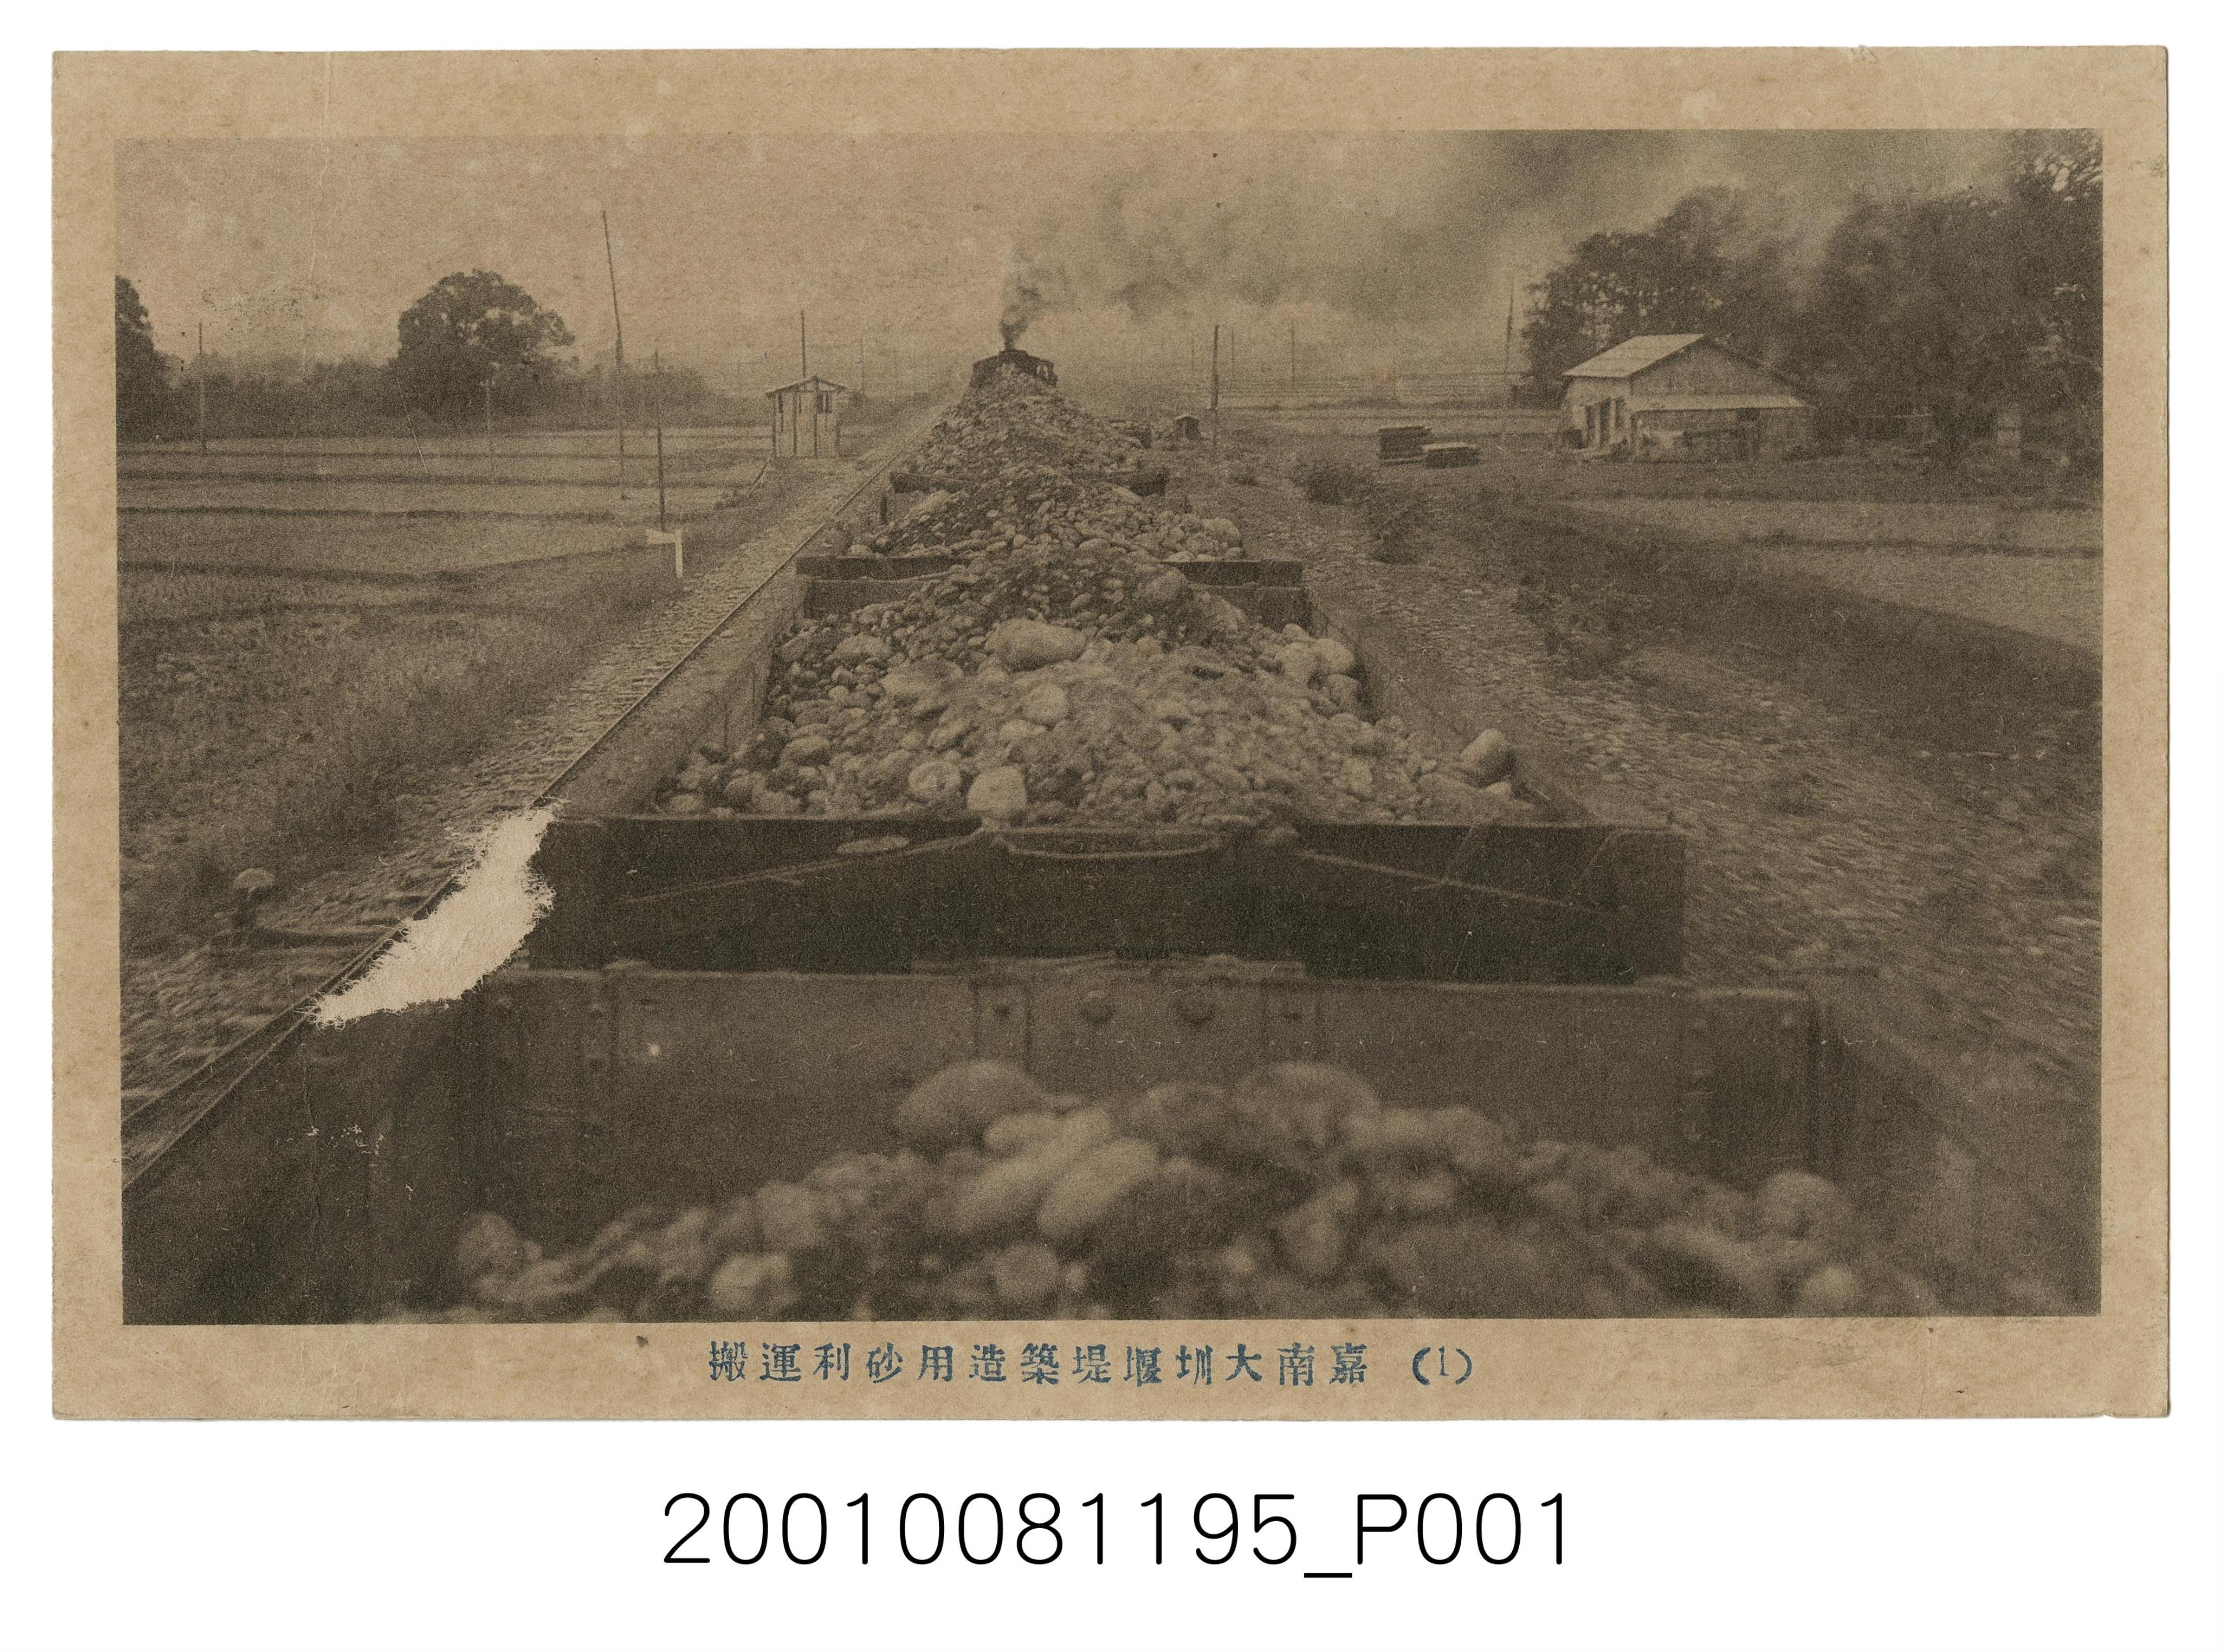 嘉南大圳堰堤建造用砂石搬運 (共2張)